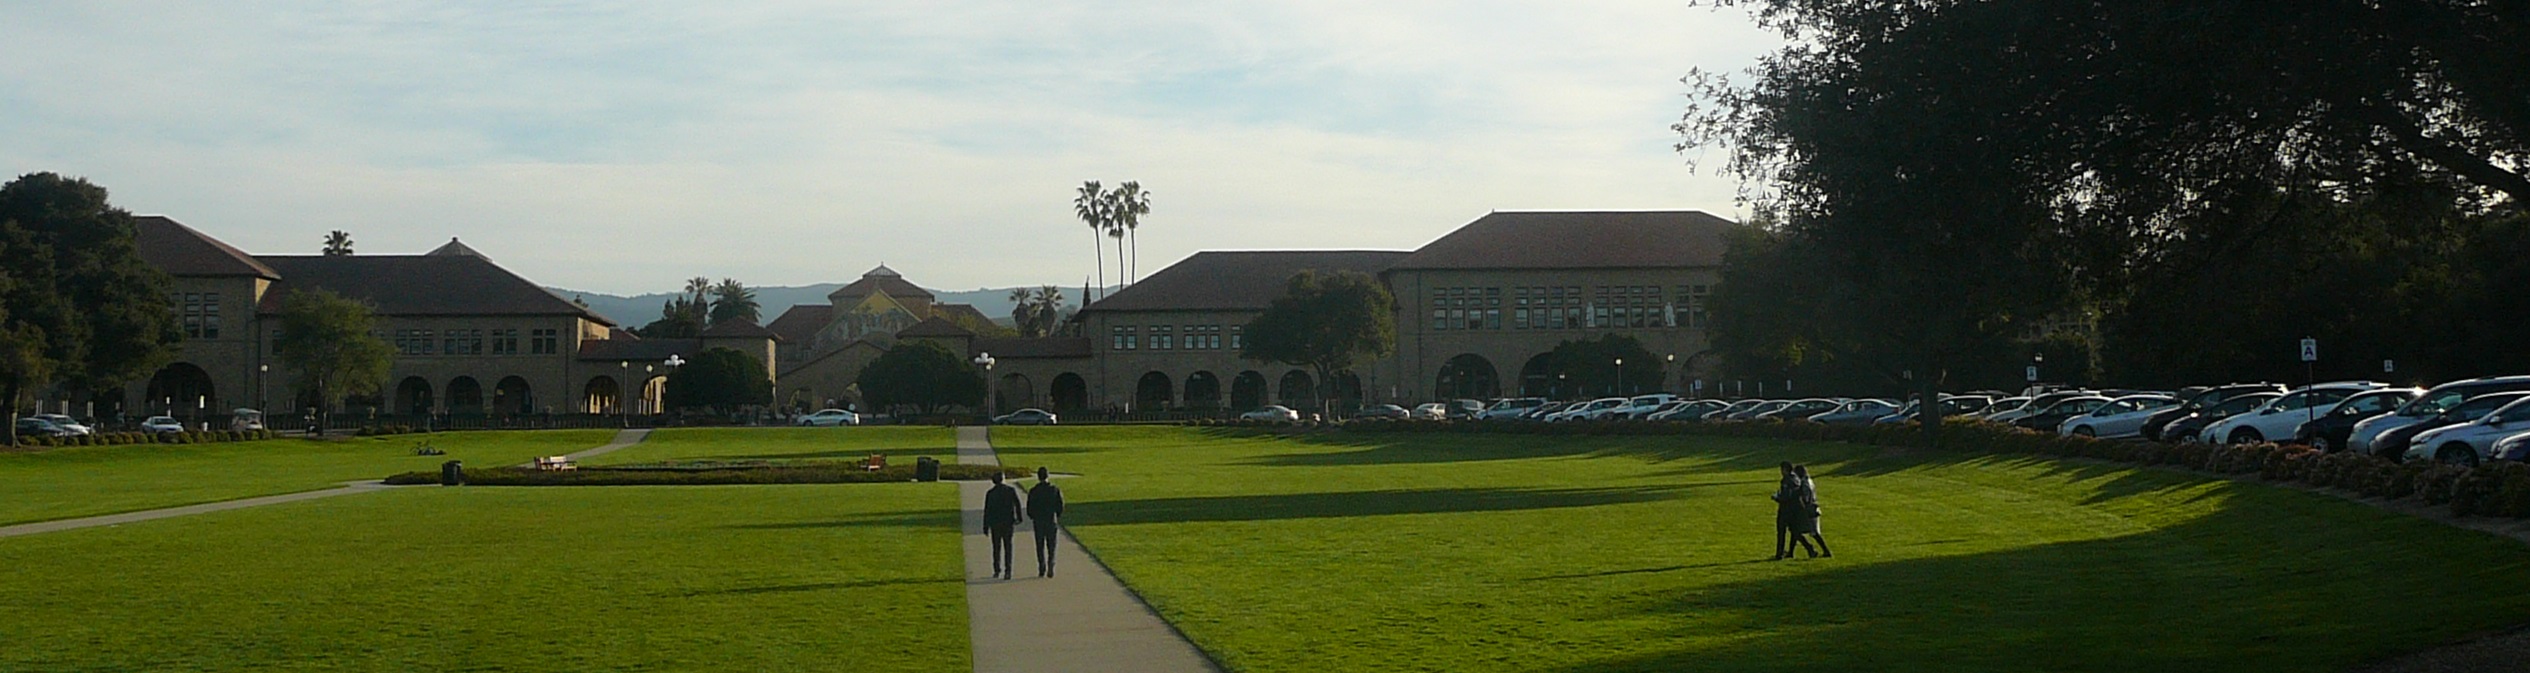 Stanford-1-700X186.jpg